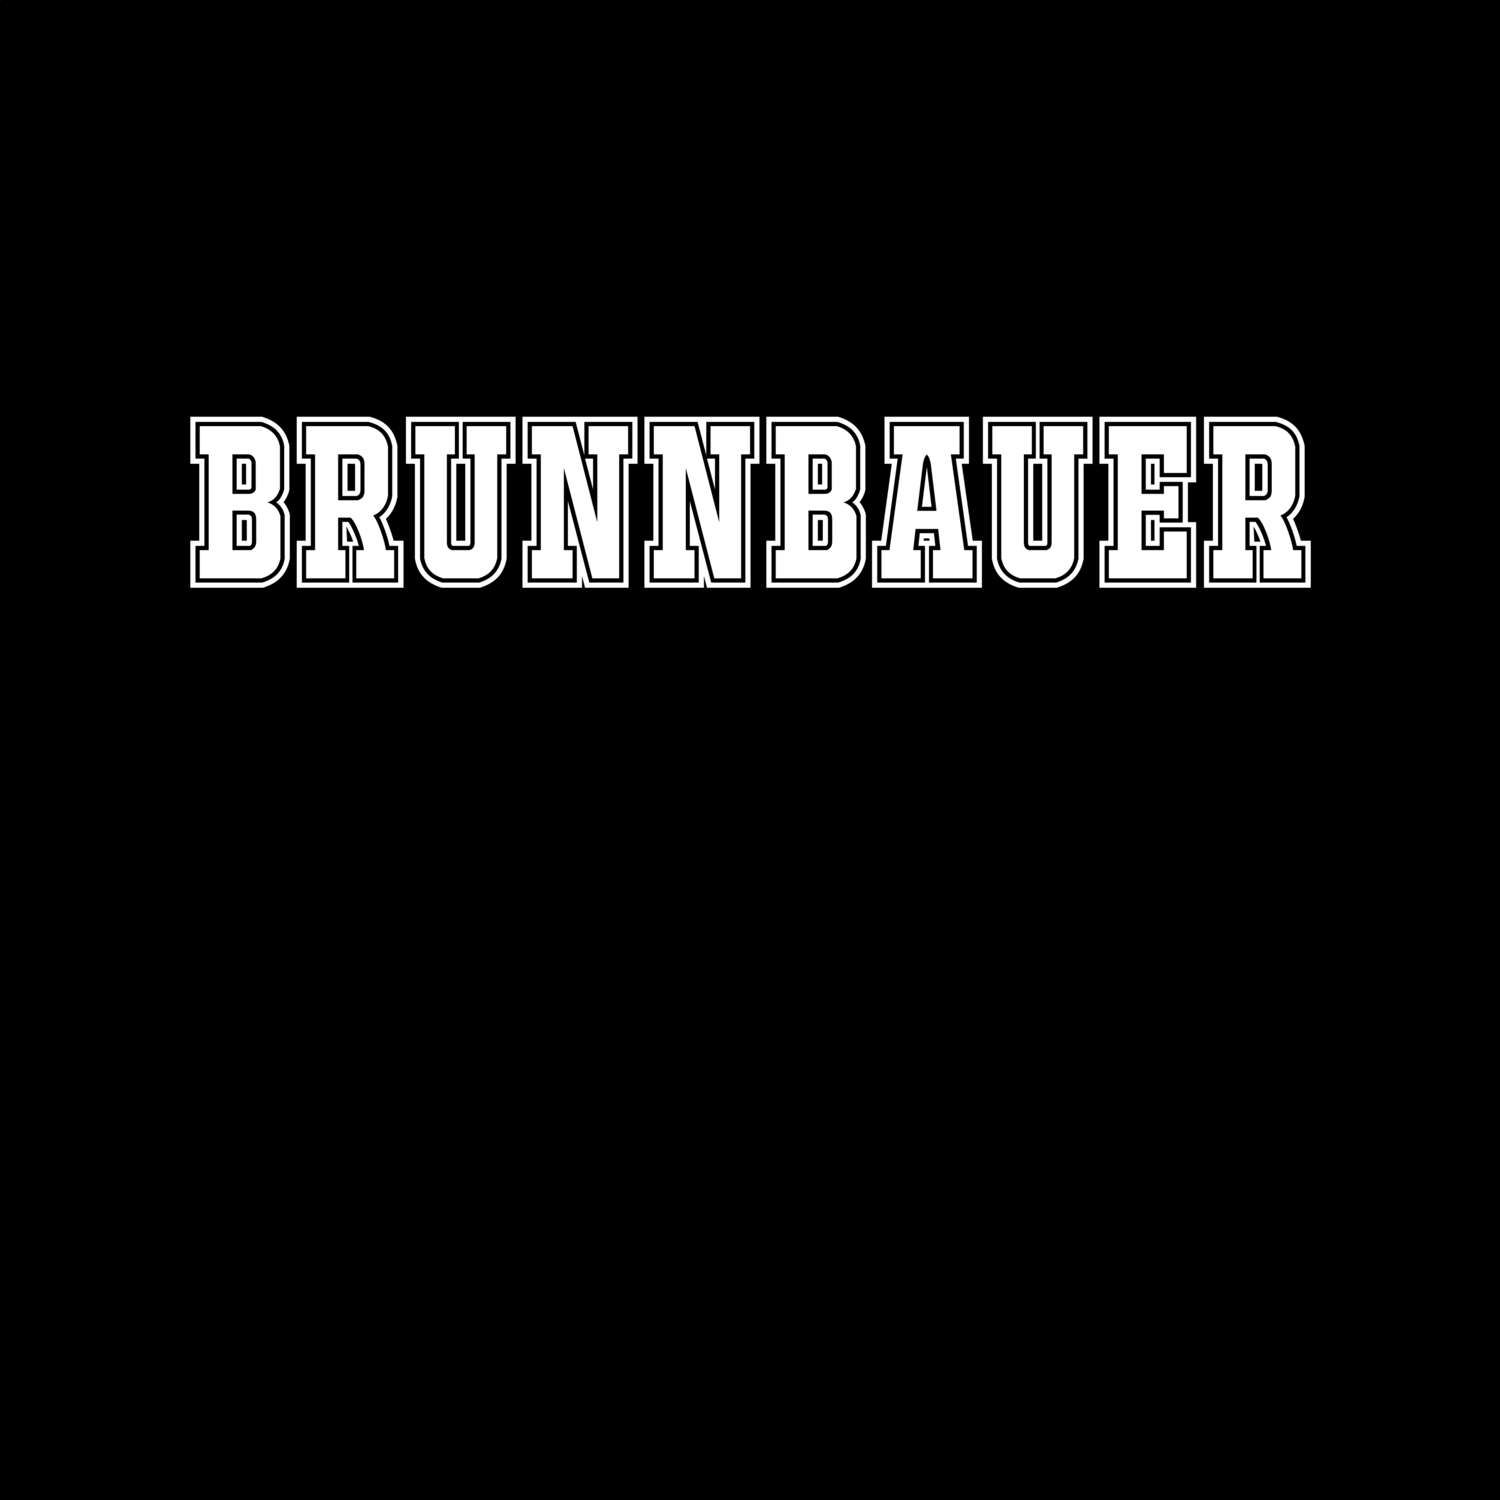 Brunnbauer T-Shirt »Classic«